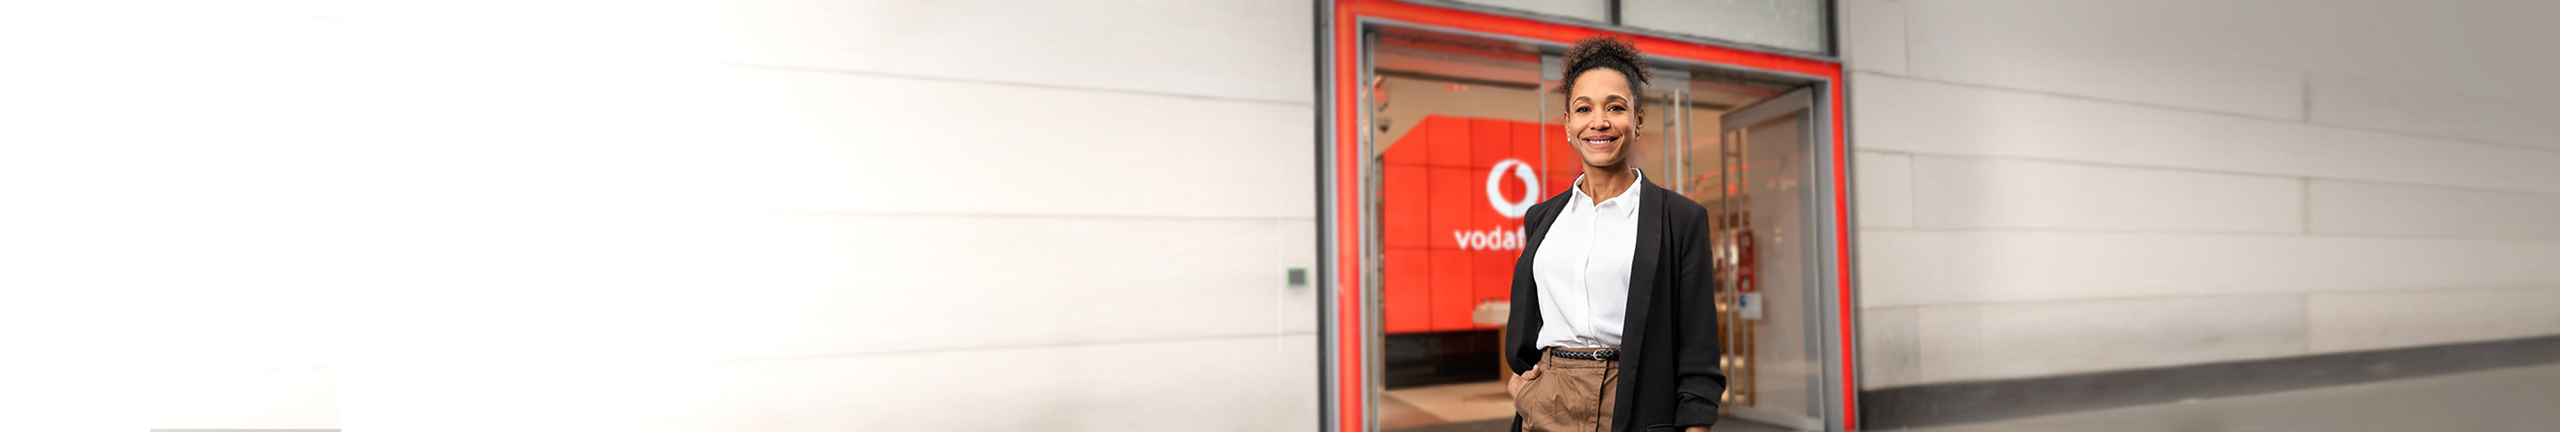 Mach Dich selbständig mit Deinem eigenen Vodafone-Shop